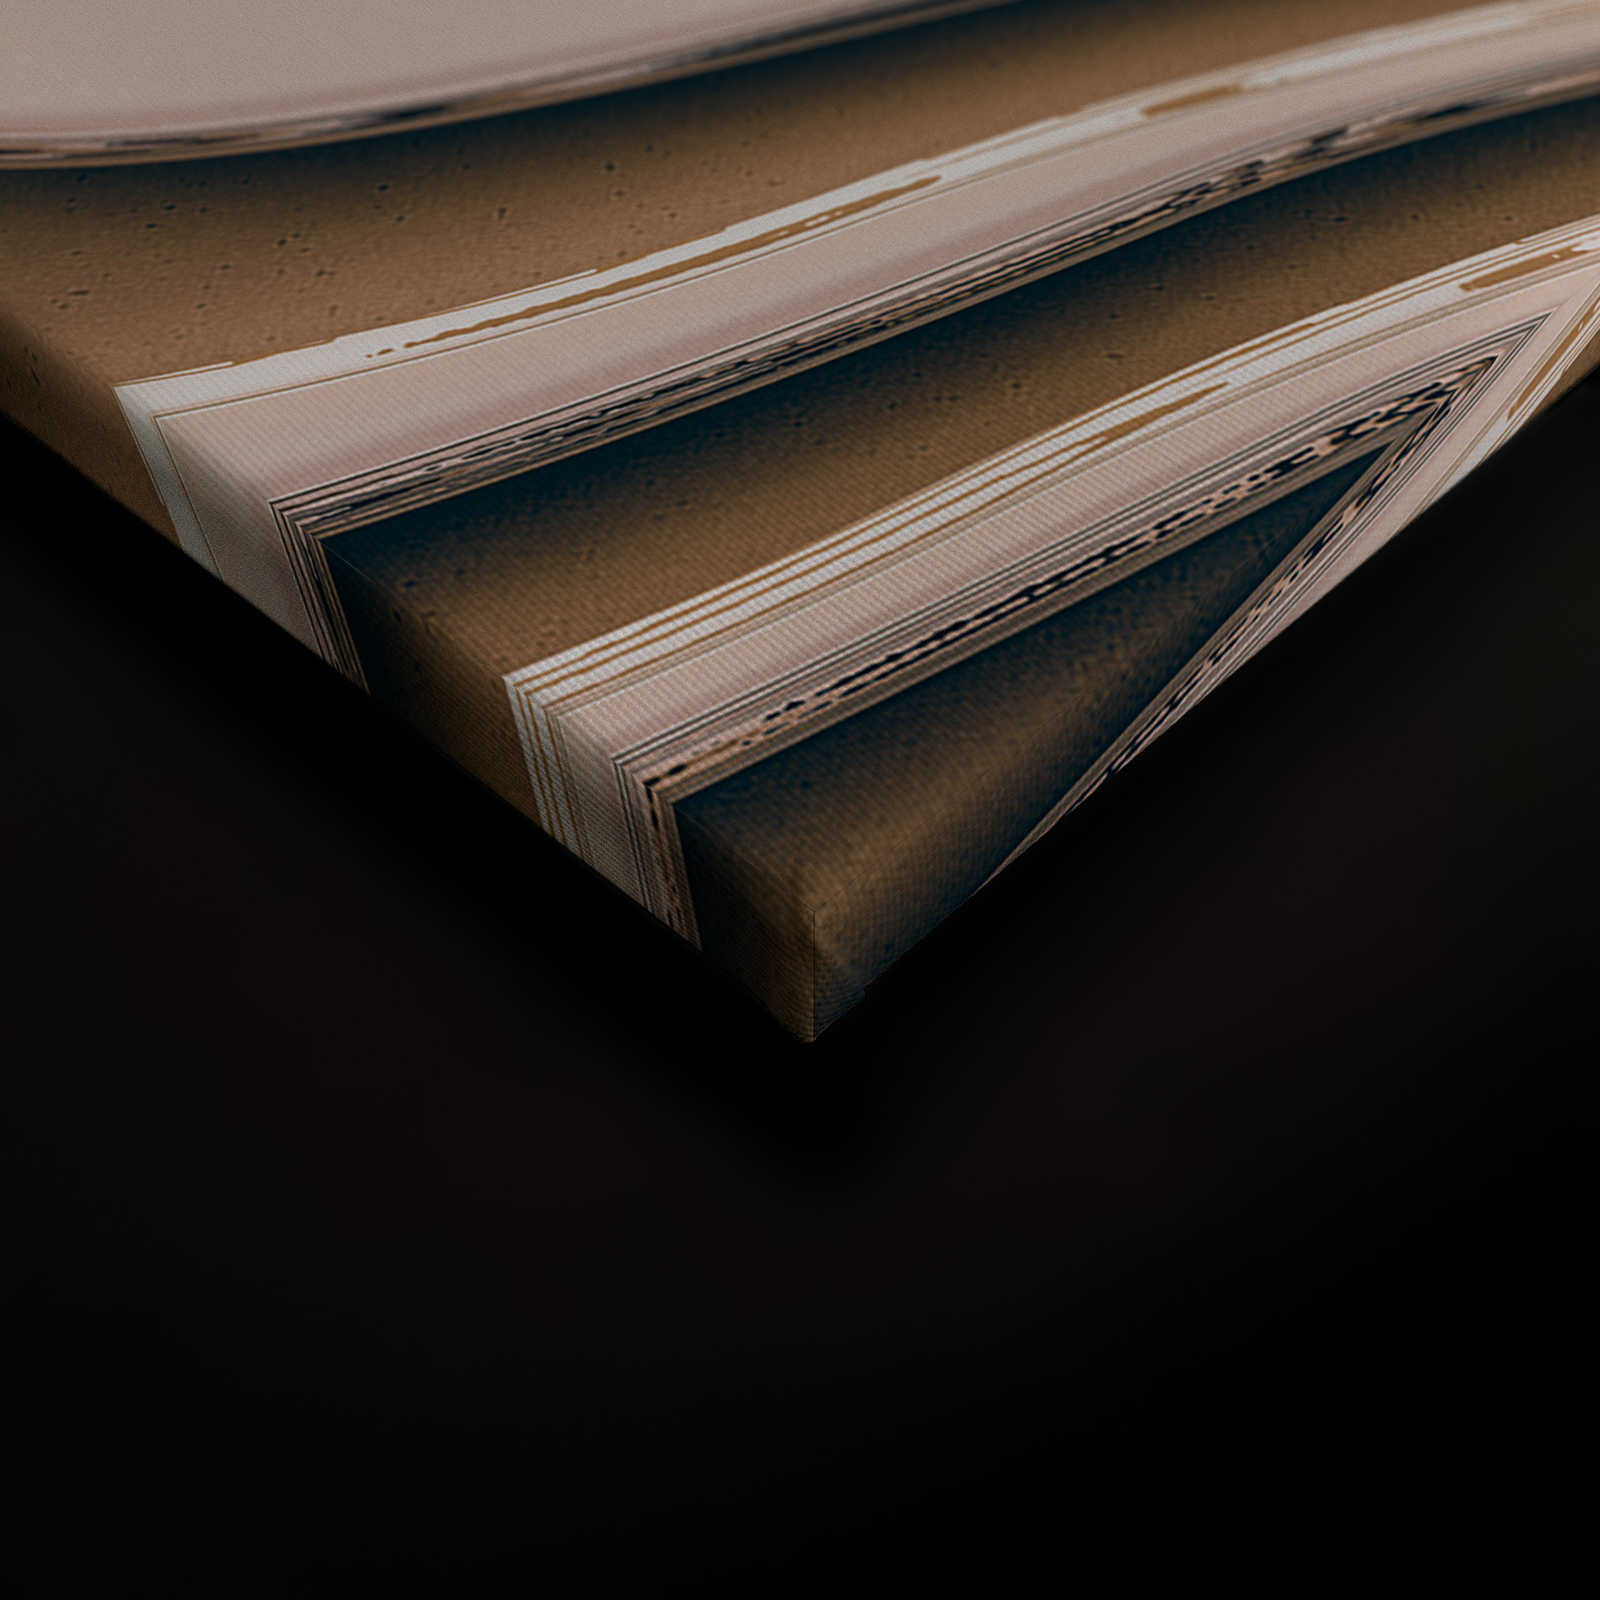             Leinwandbild mit wellenförmigen Linien und Schatten | beige, braun – 0,90 m x 0,60 m
        